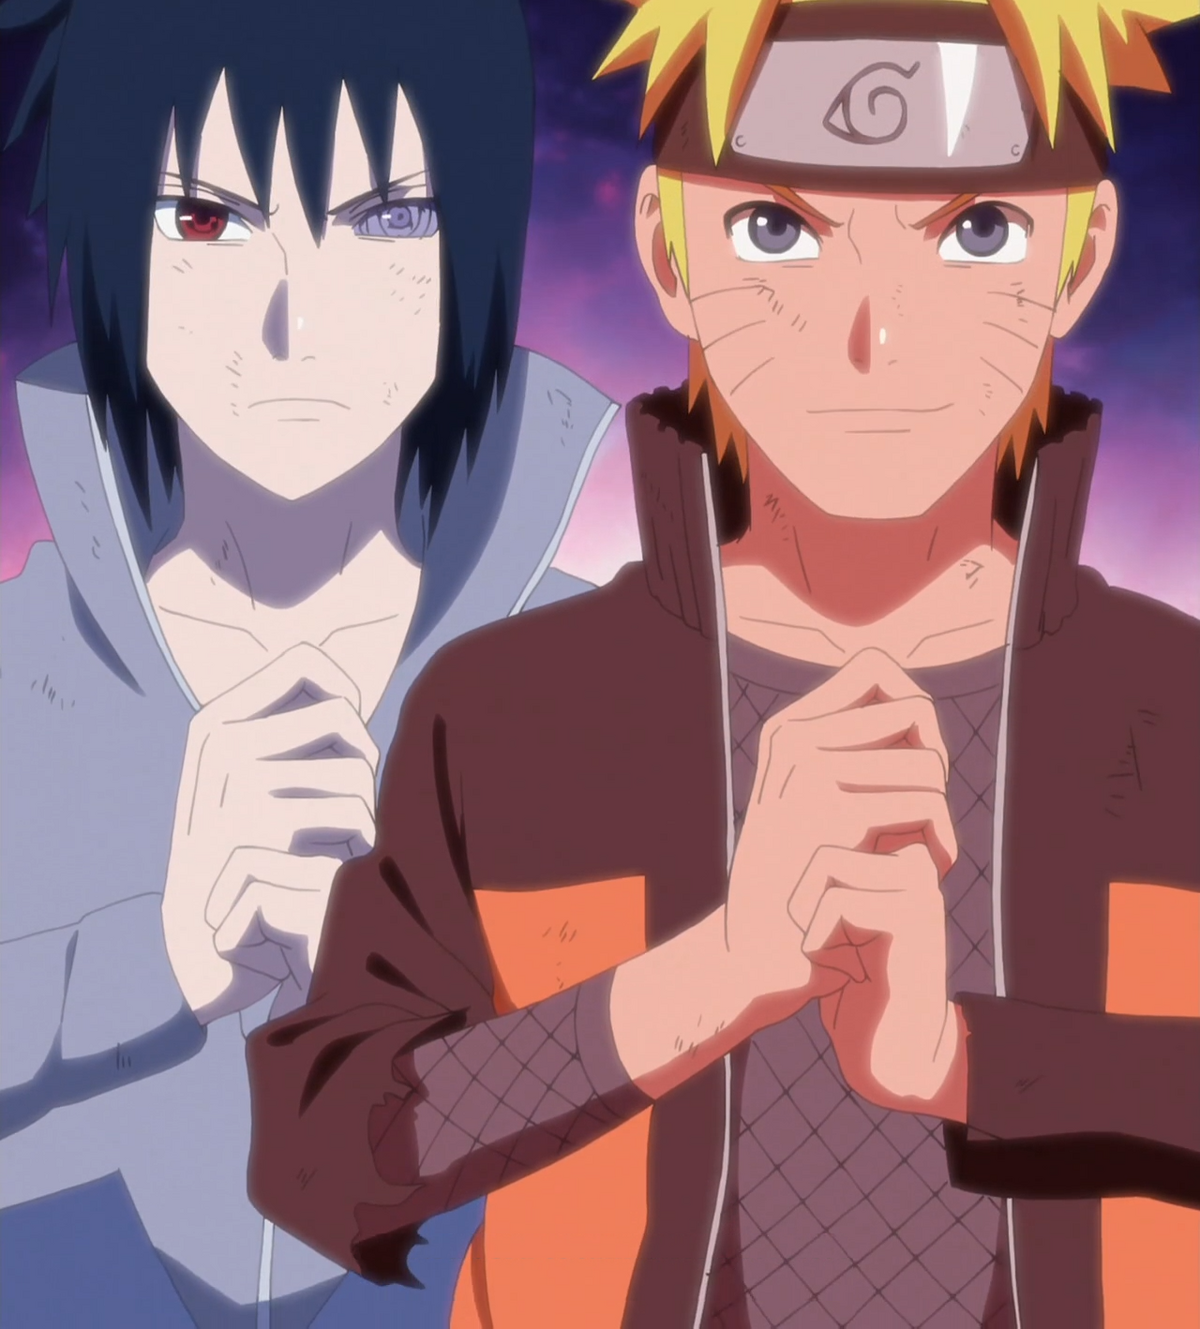 Naruto Shippuden - Todos os sonhos do Tsukuyomi Infinito - Critical Hits